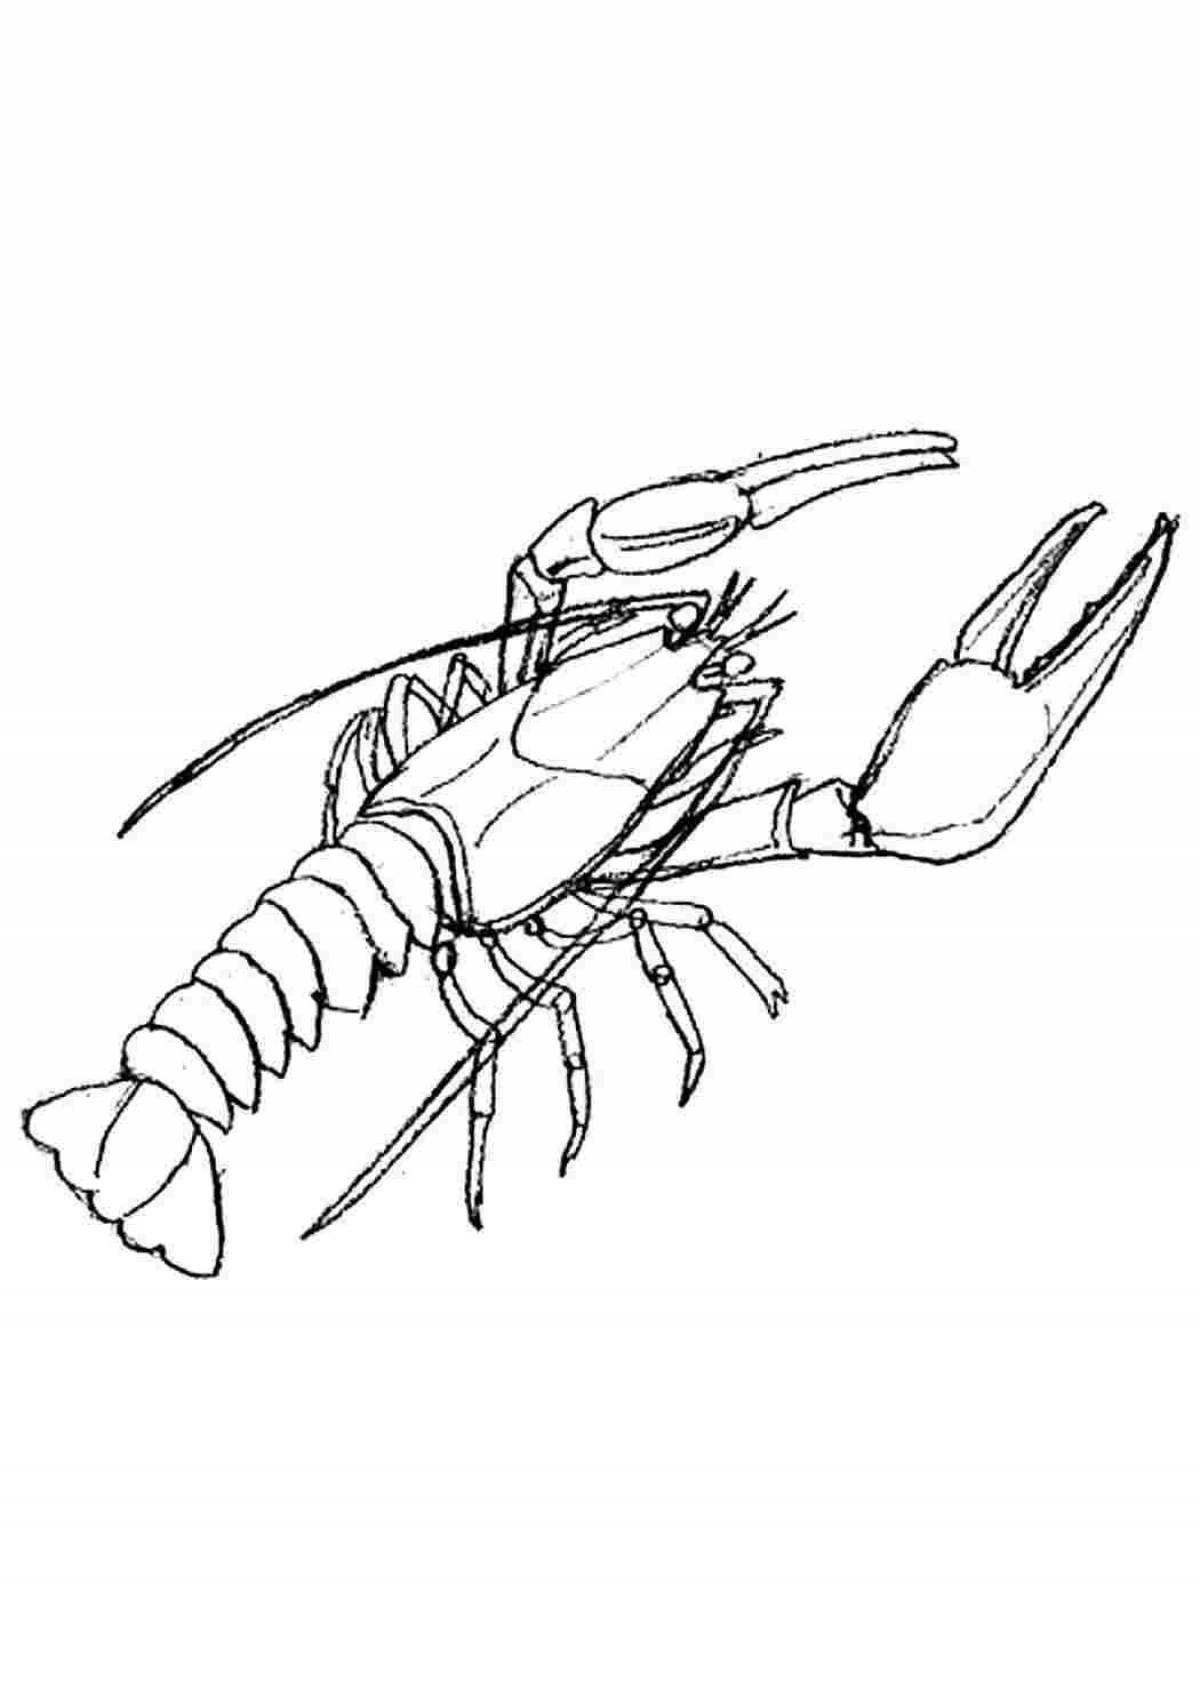 Gorgeous mantis shrimp coloring page